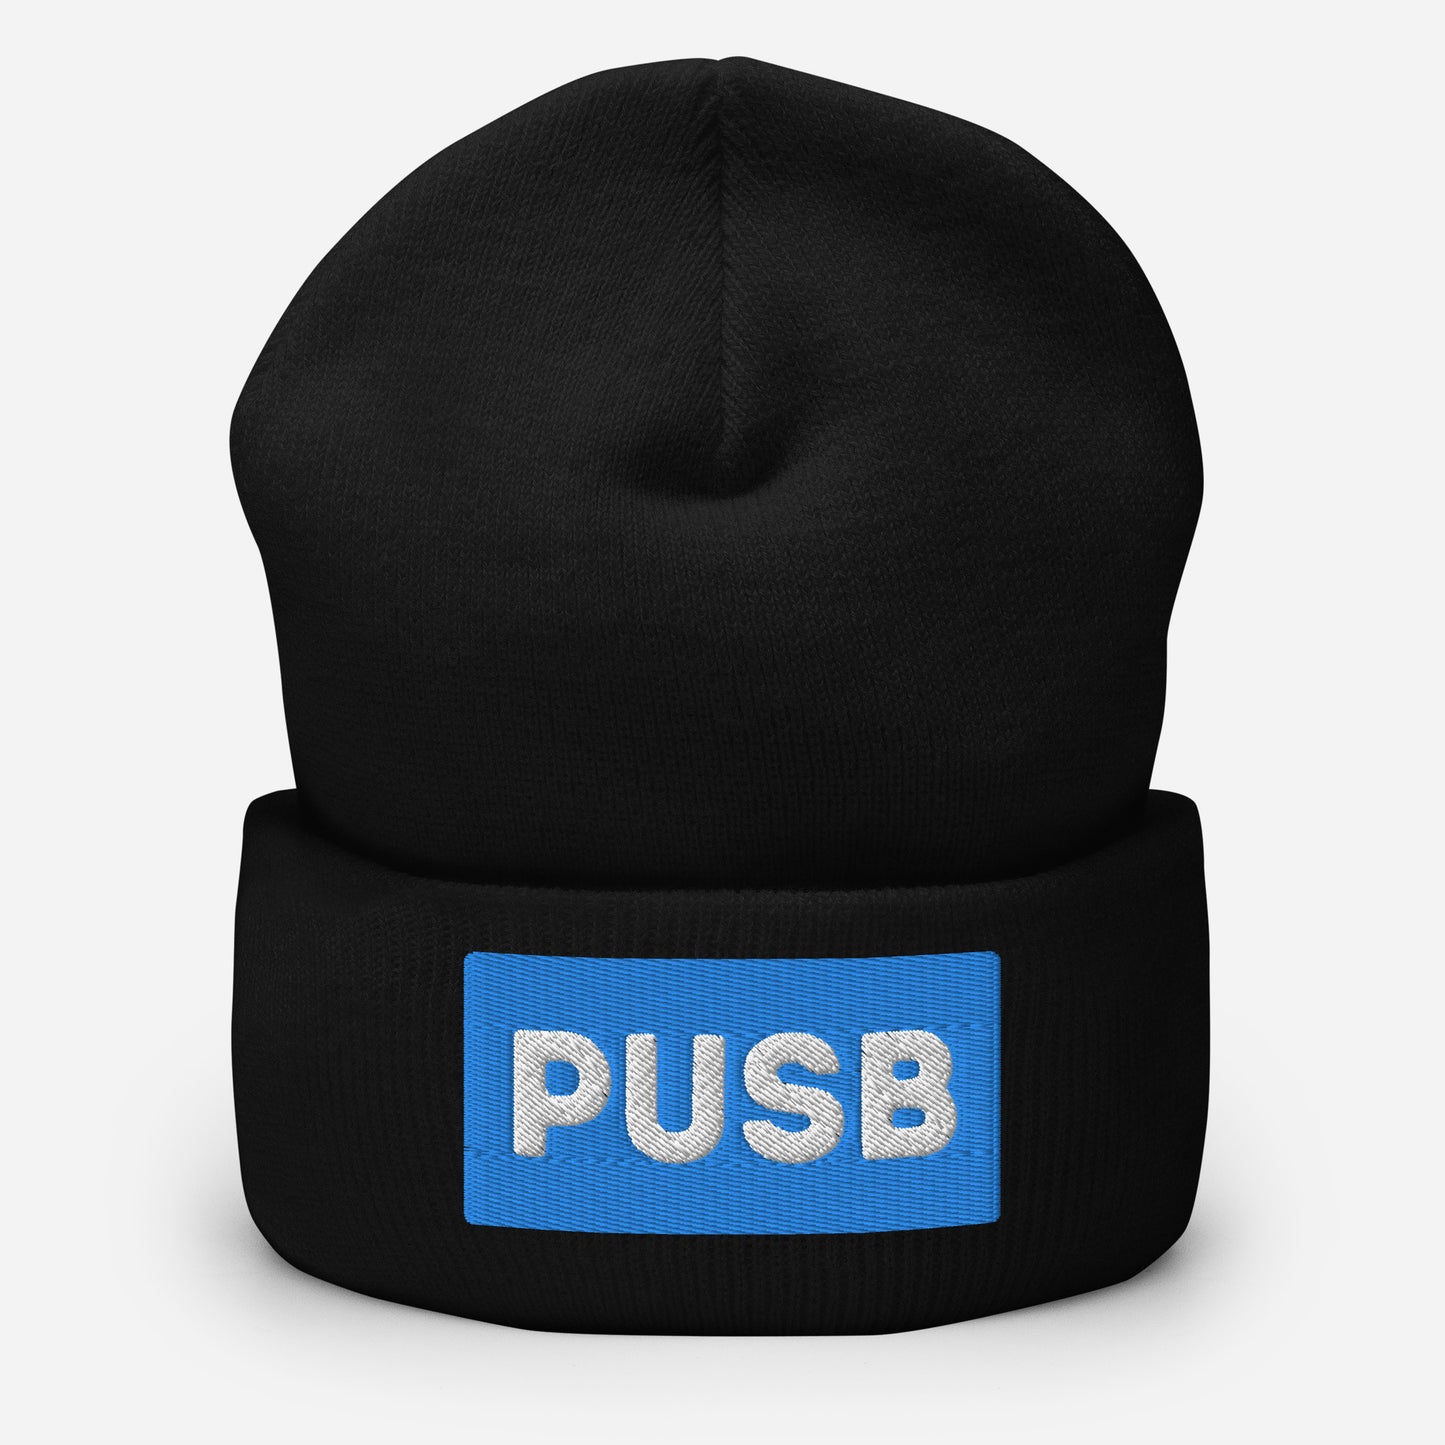 PUSB Cuffed Beanie Hat